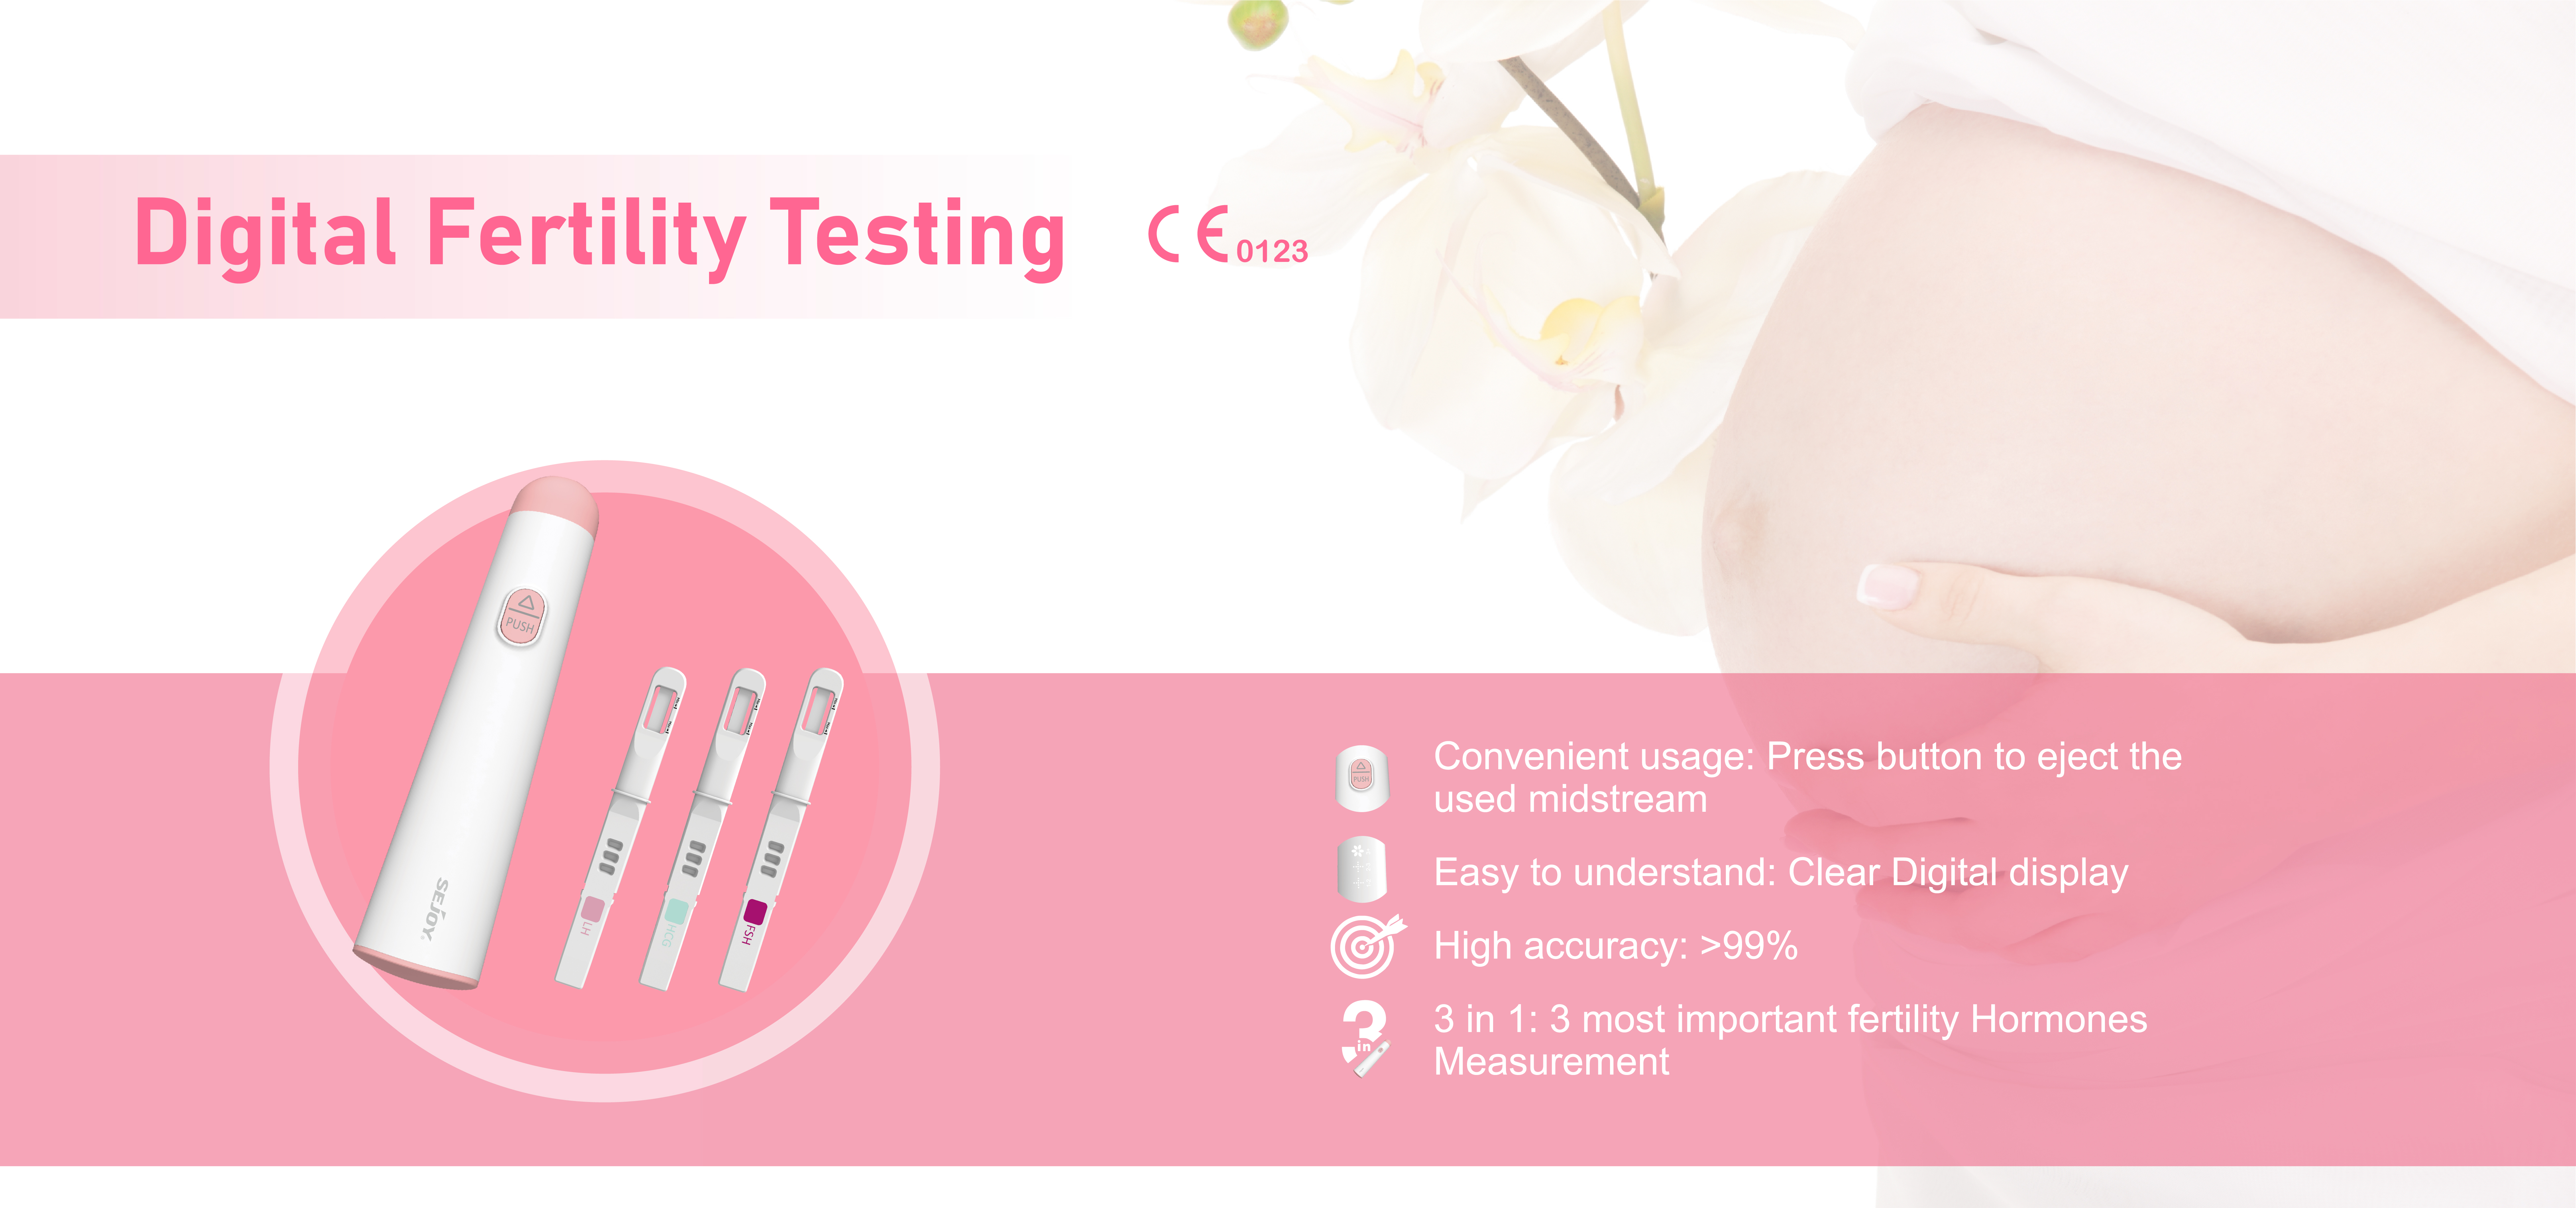 Digitalt fertilitetstestsystem